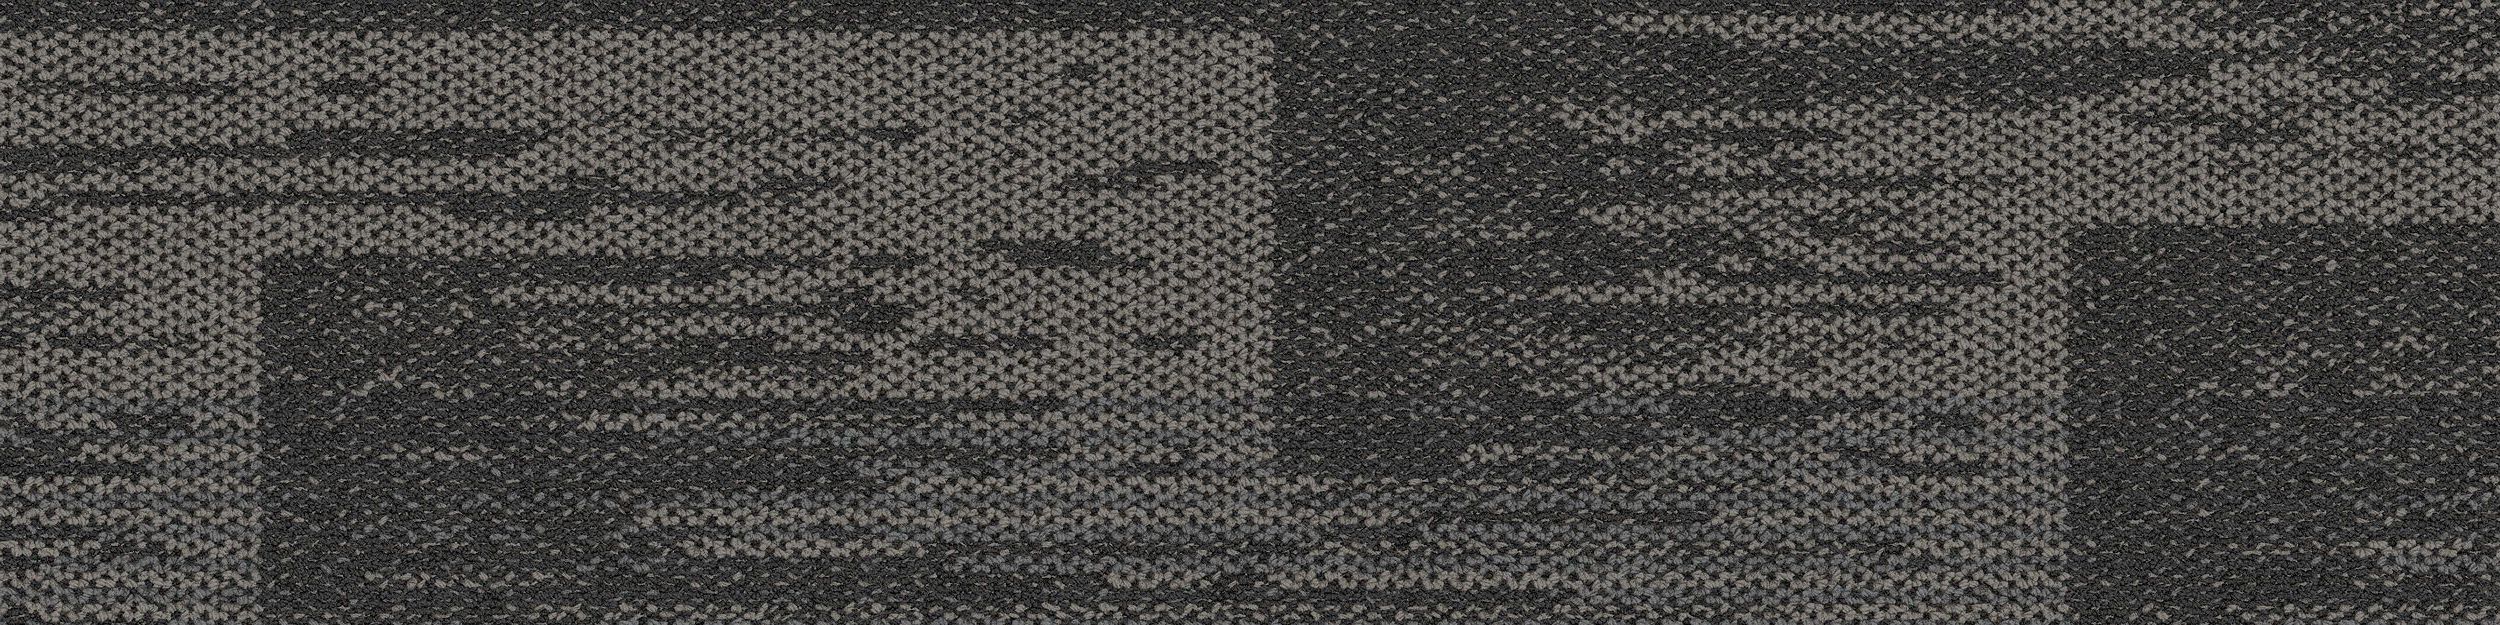 AE311 Carpet Tile In Smoke image number 2